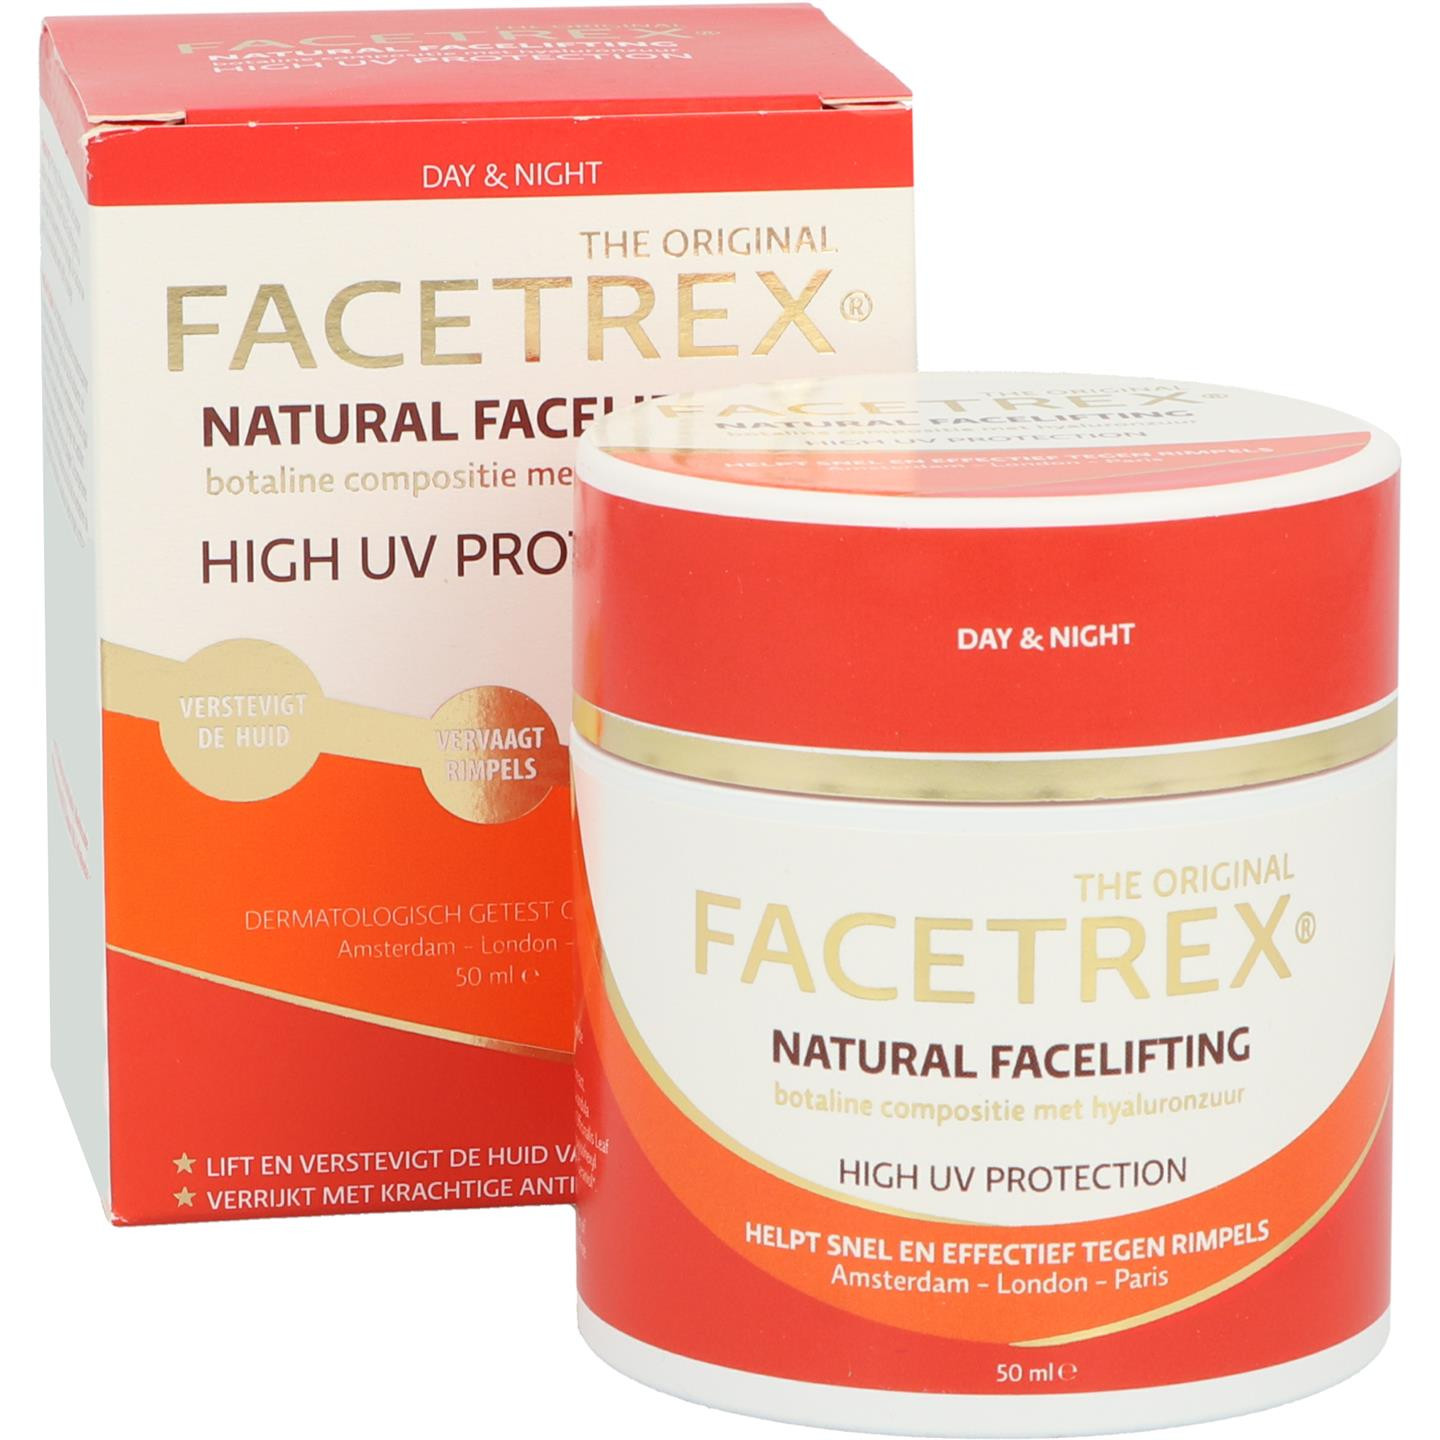 Facetrex natural facelifting